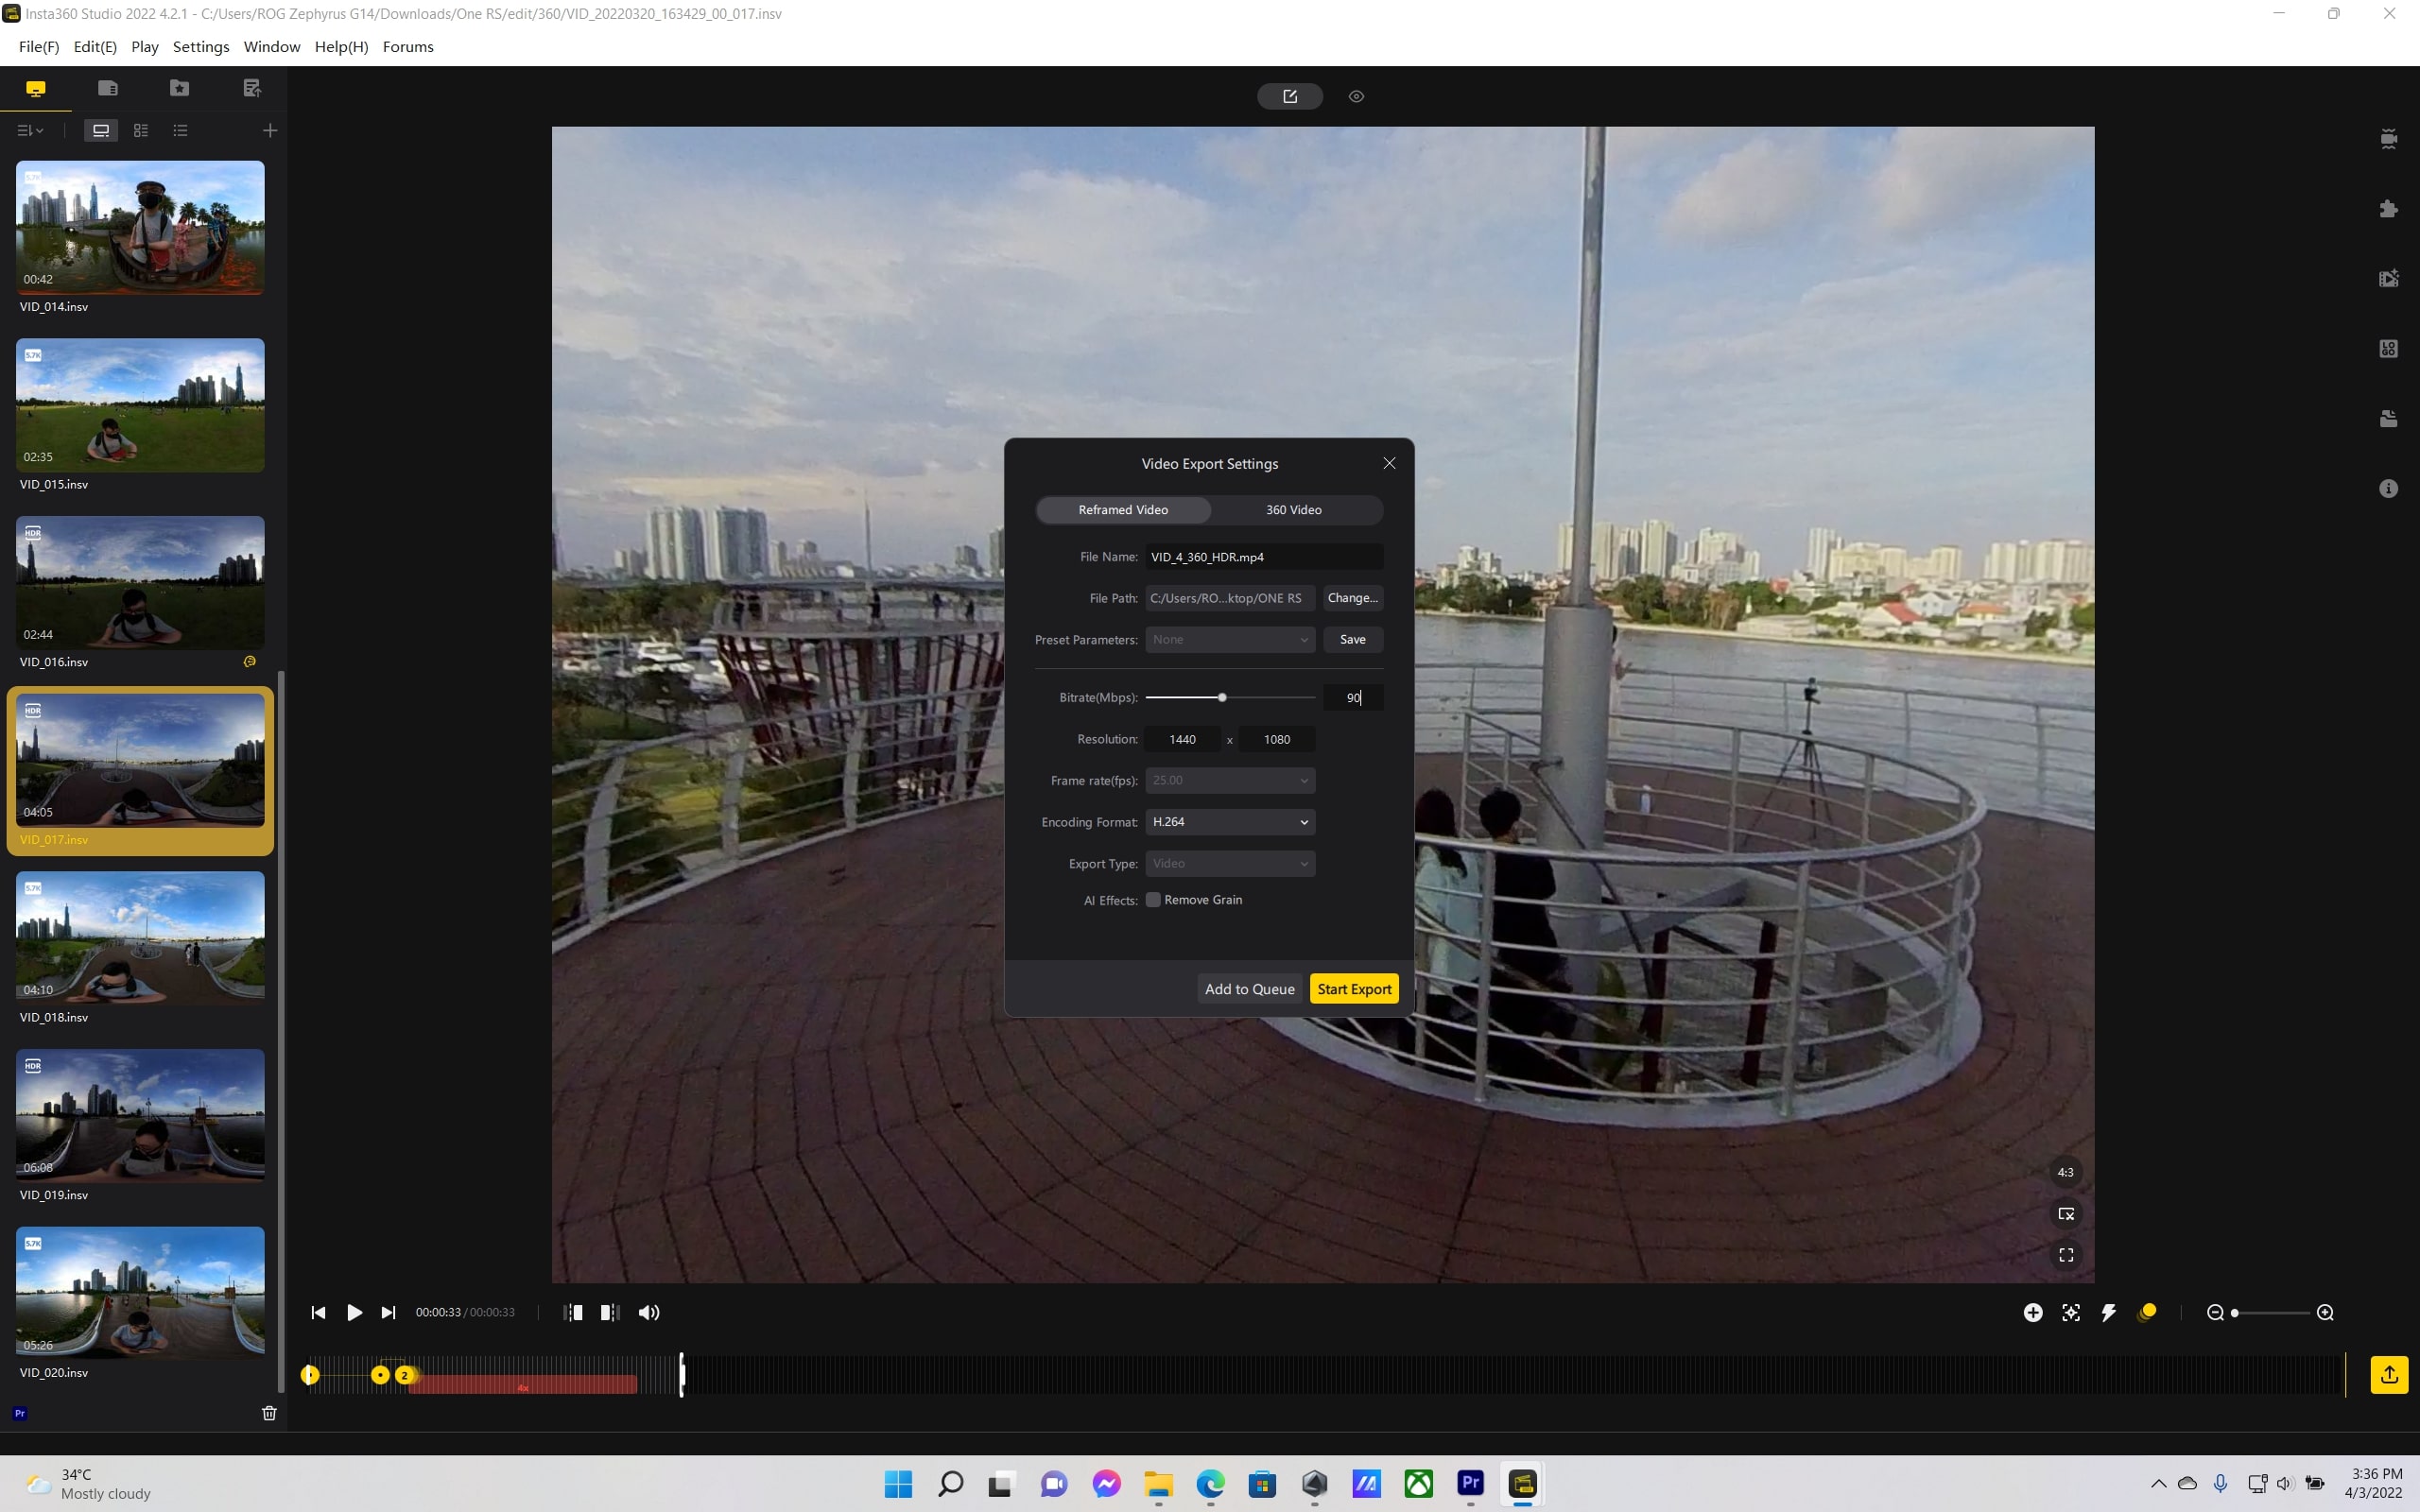 Trải nghiệm camera hành trình Insta360 ONE RS: Độc đáo và thú vị, đa năng hơn GoPro